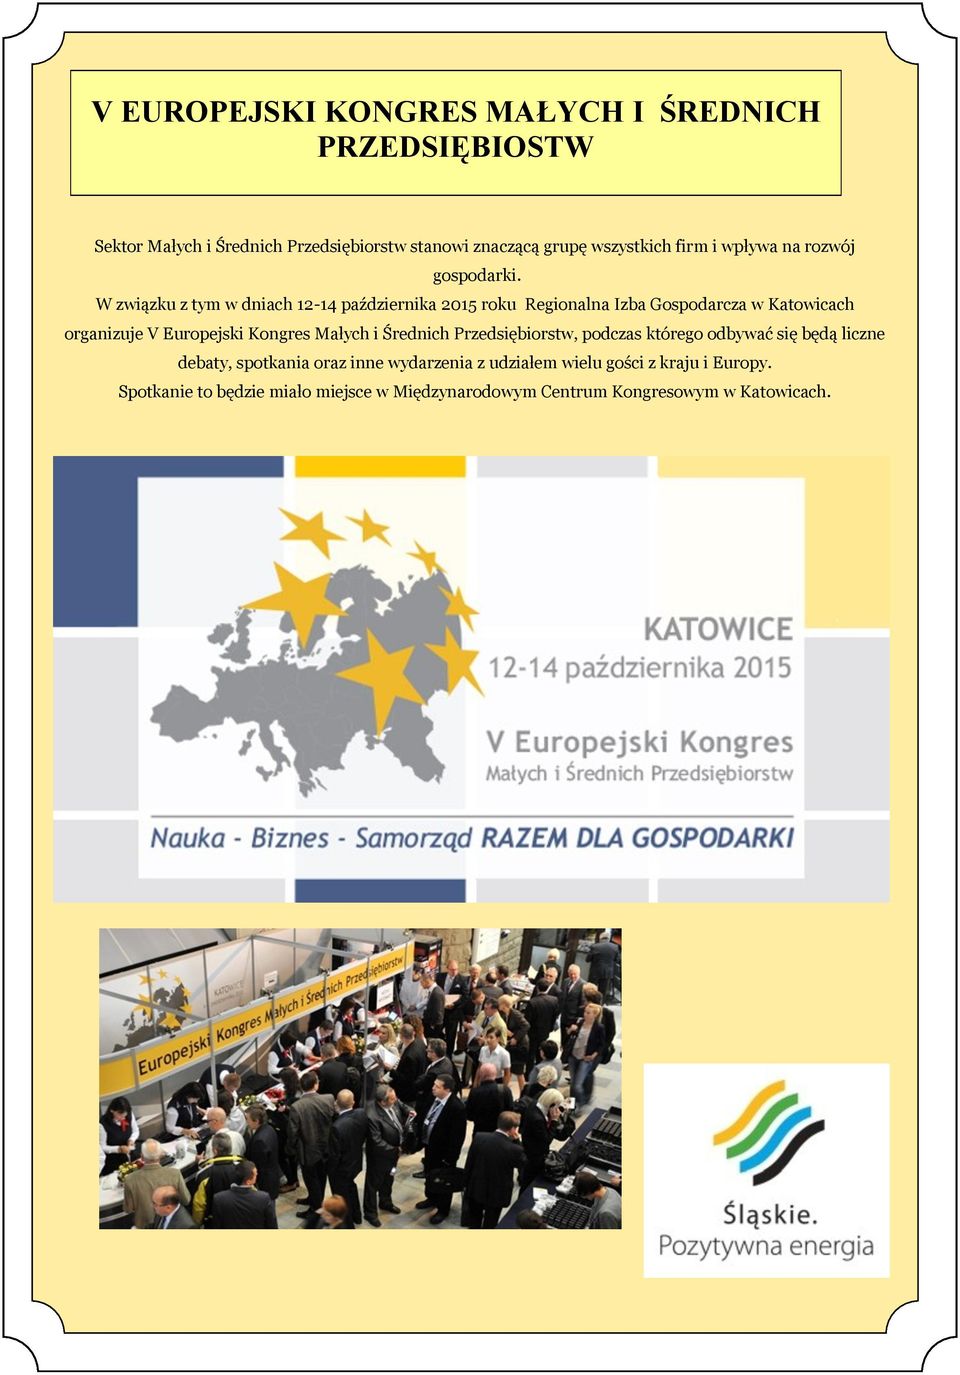 W związku z tym w dniach 12-14 października 2015 roku Regionalna Izba Gospodarcza w Katowicach organizuje V Europejski Kongres Małych